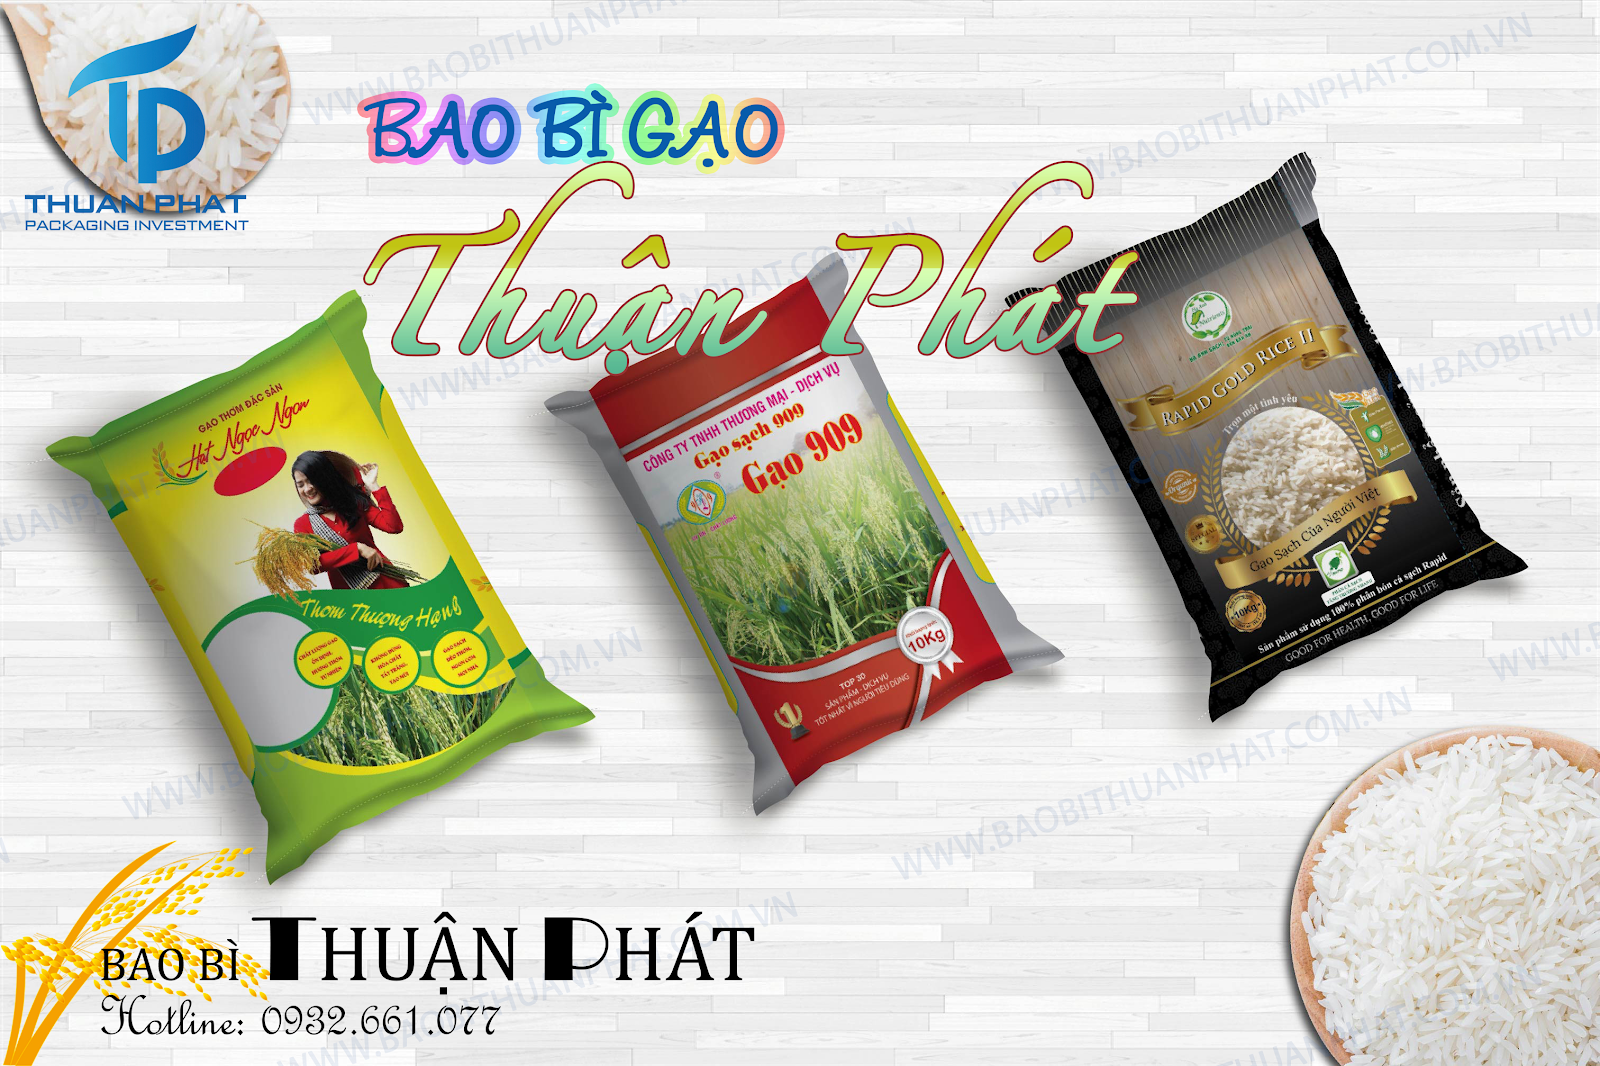 Bao bì gạo - Bao Bì Thuận Phát